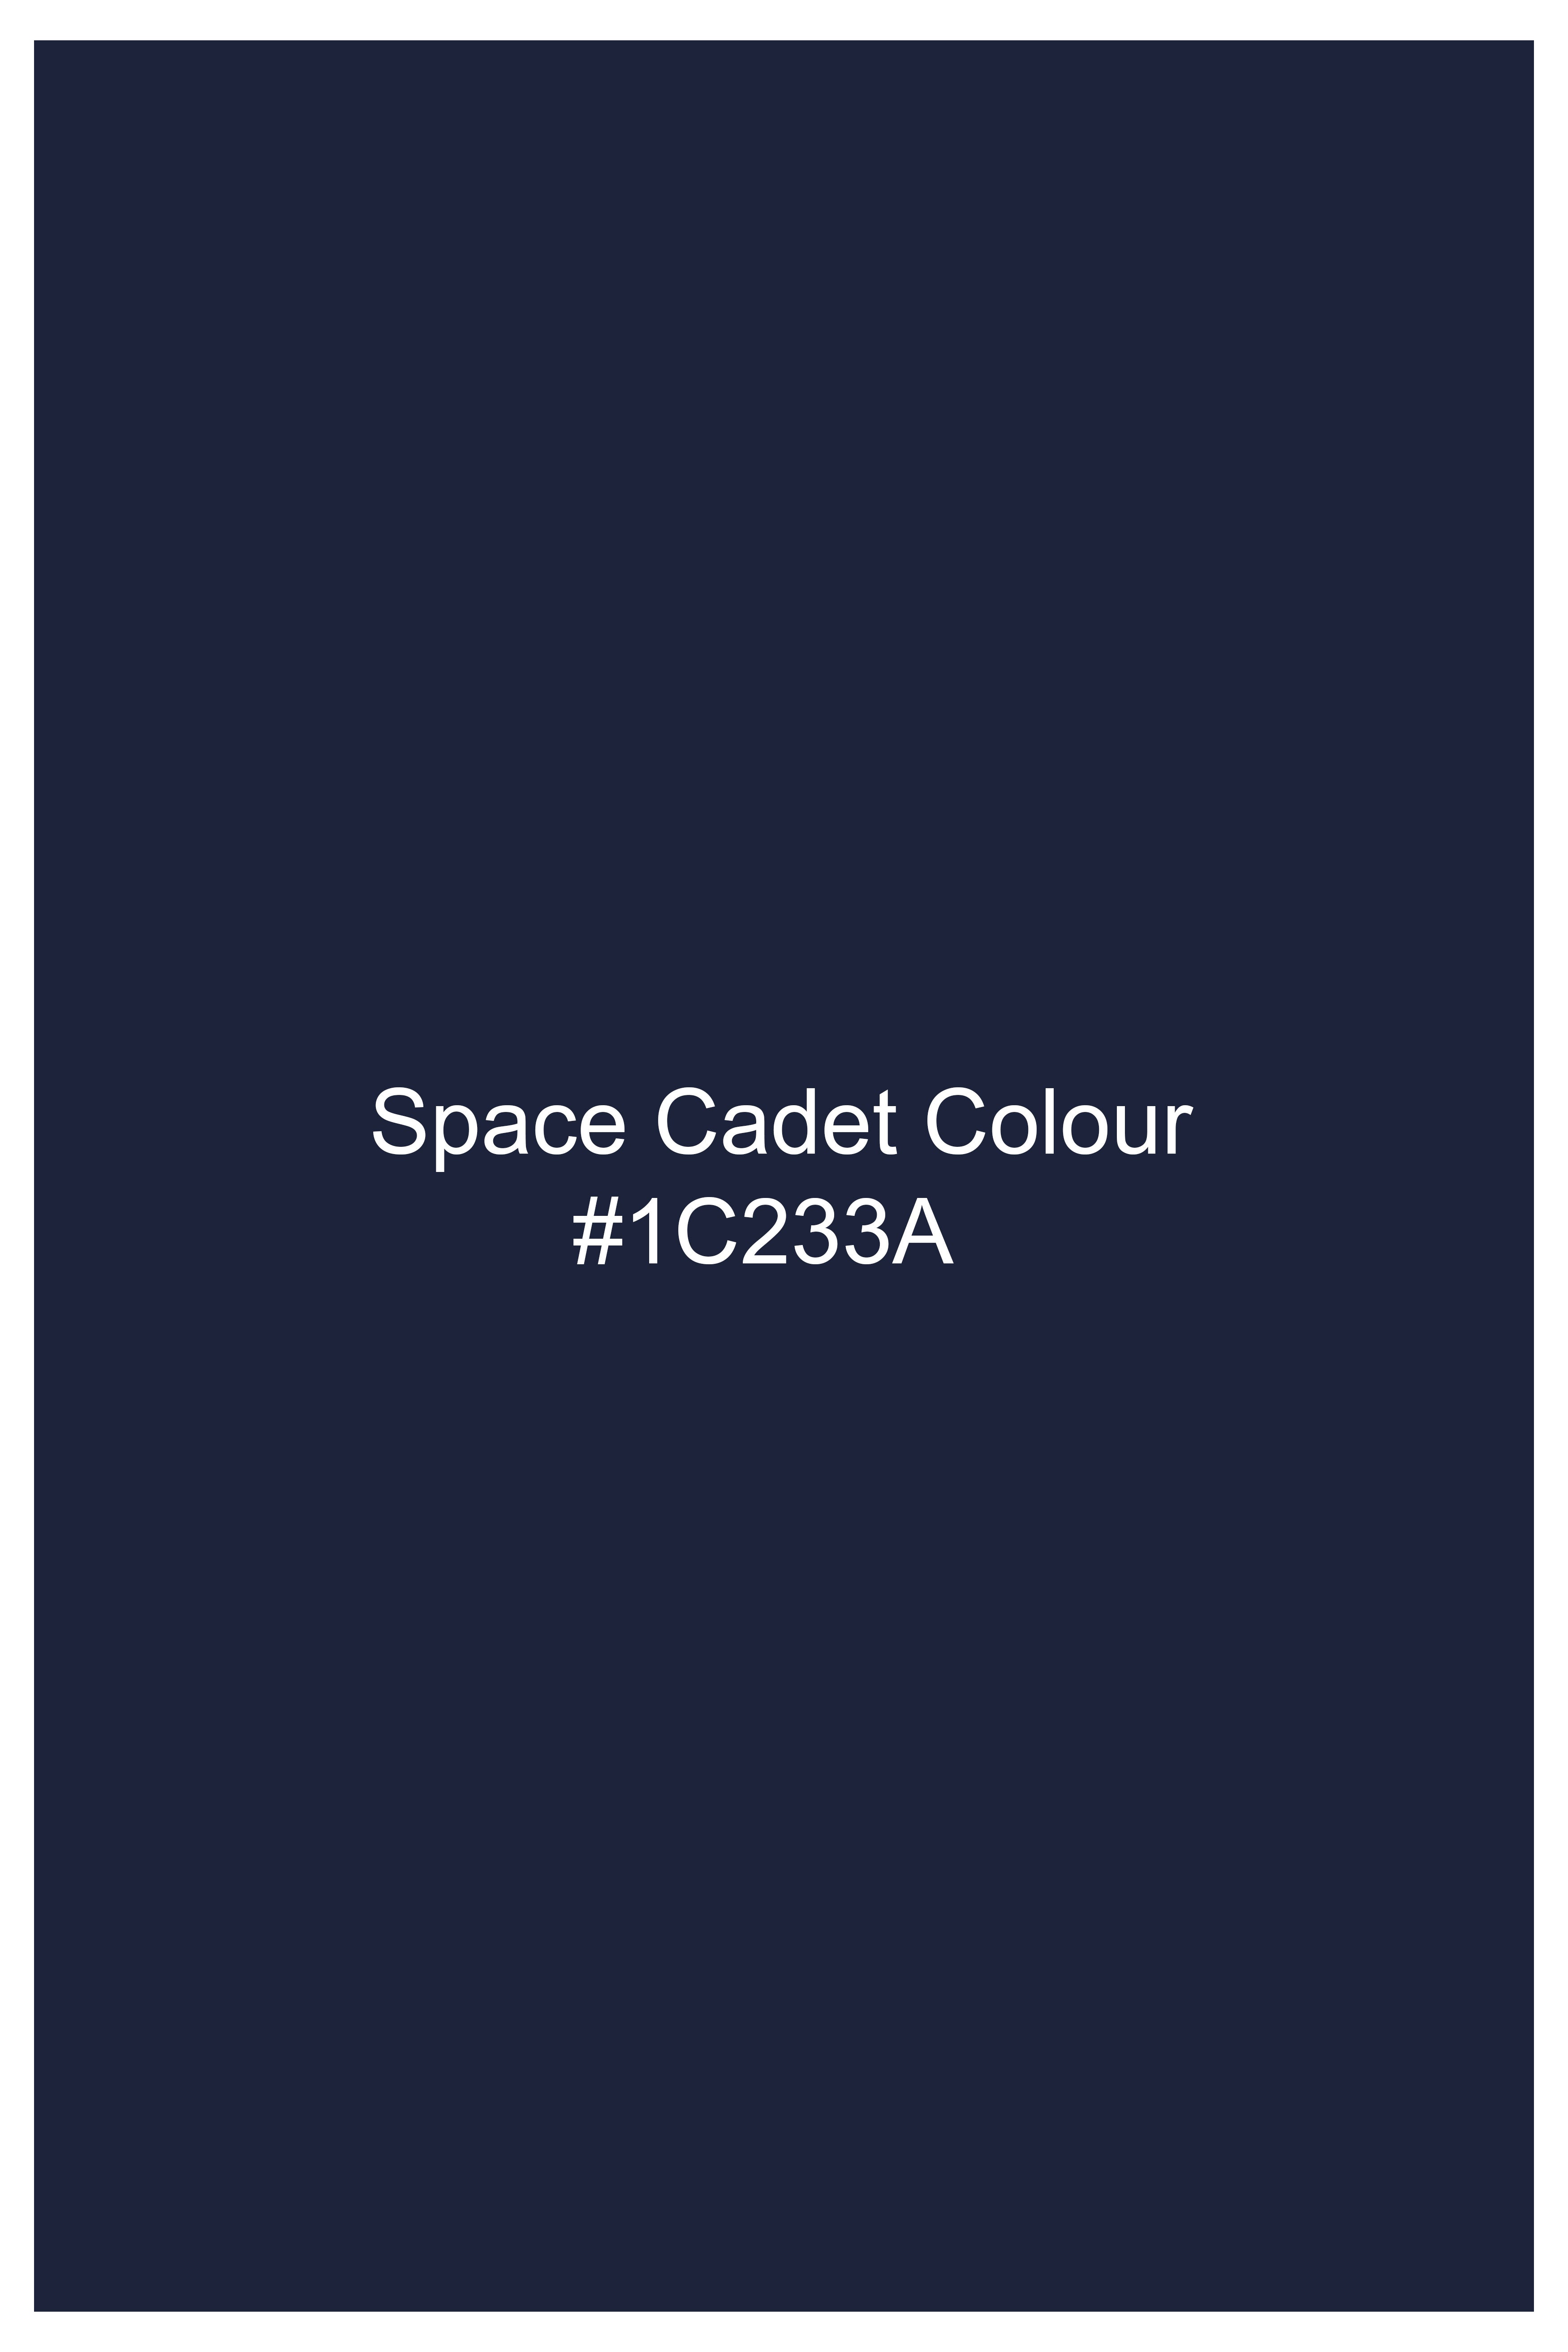 Space Cadet Blue Wool Rich Designer Suit ST2939-D65-36, ST2939-D65-38, ST2939-D65-40, ST2939-D65-42, ST2939-D65-44, ST2939-D65-46, ST2939-D65-48, ST2939-D65-50, ST2939-D65-52, ST2939-D65-54, ST2939-D65-56, ST2939-D65-58, ST2939-D65-60